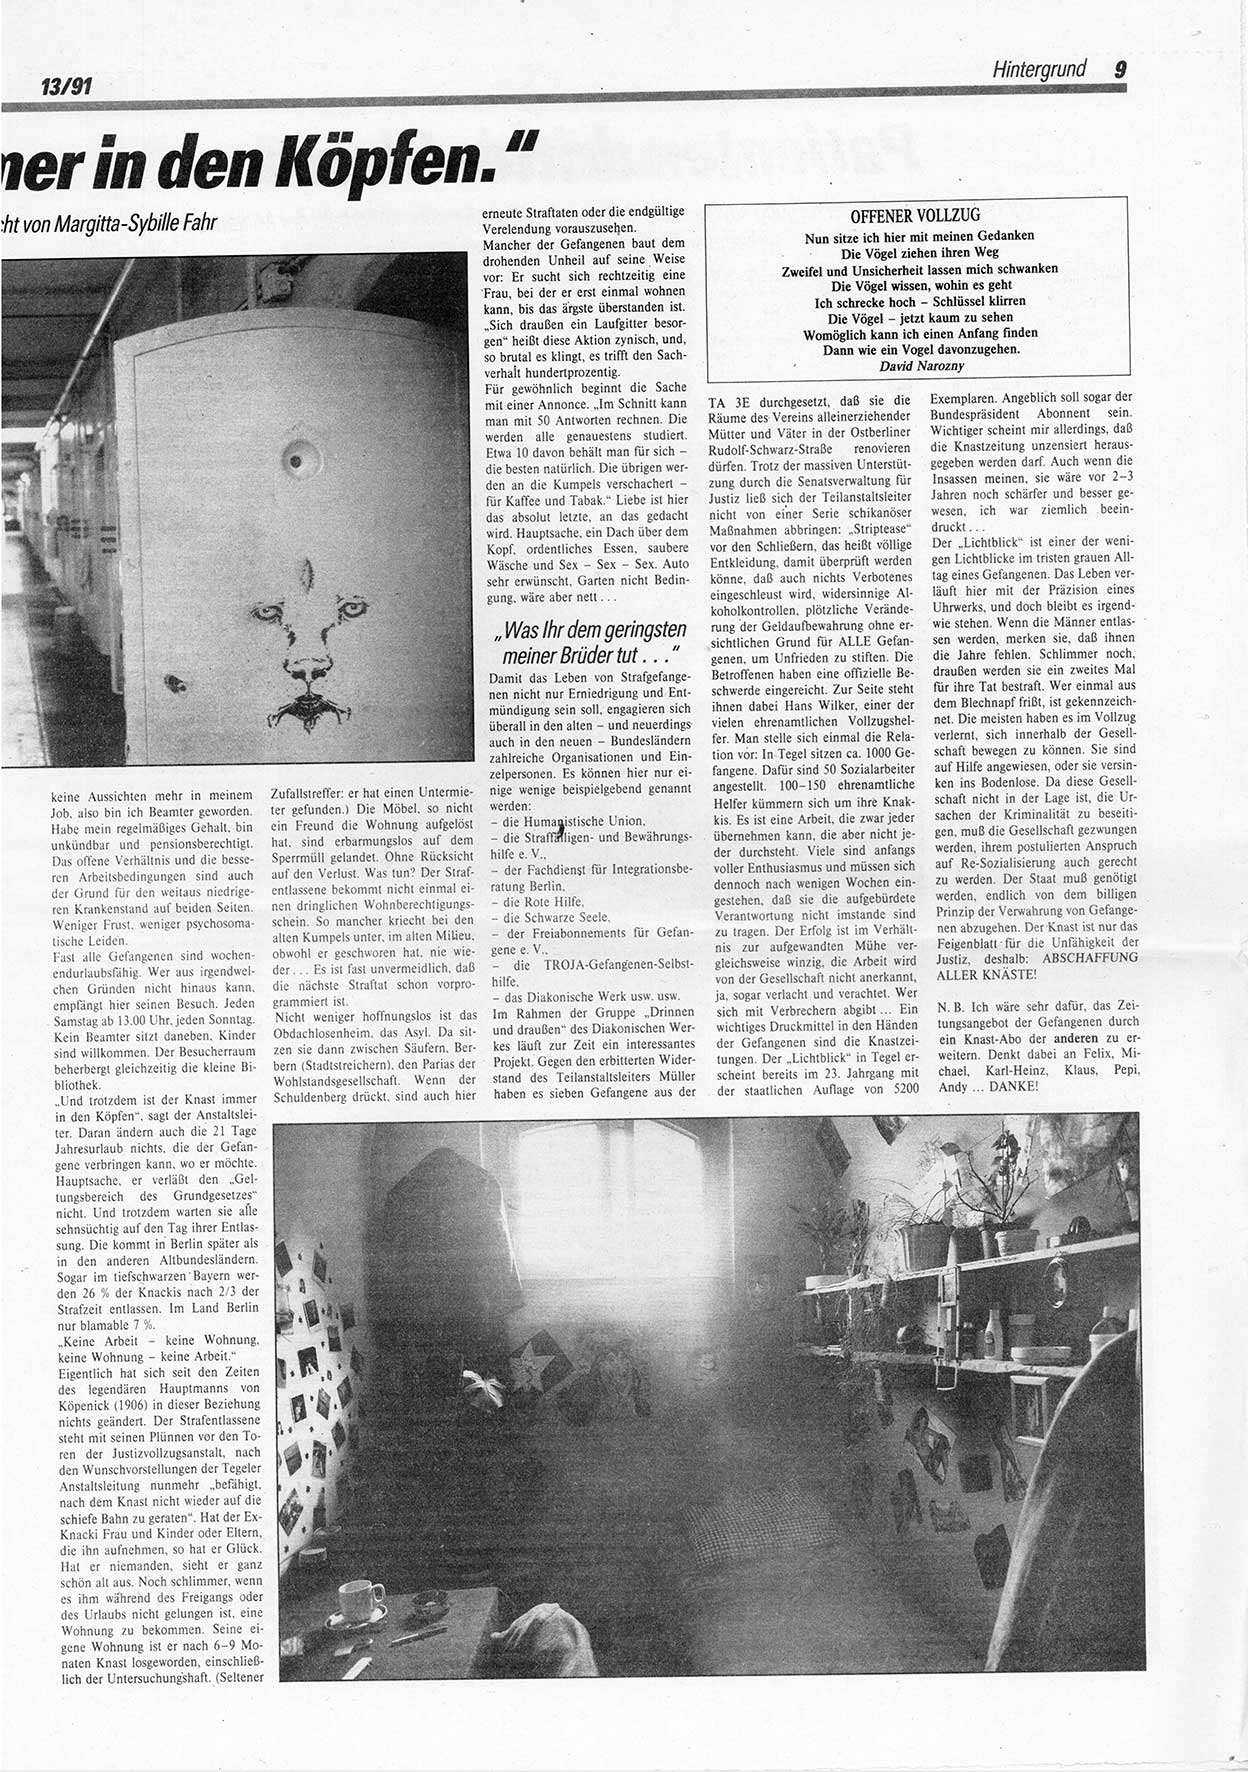 Die Andere, Unabhängige Wochenzeitung für Politik, Kultur und Kunst, Ausgabe 13 vom 27.3.1991, Seite 9 (And. W.-Zg. Ausg. 13 1991, S. 9)